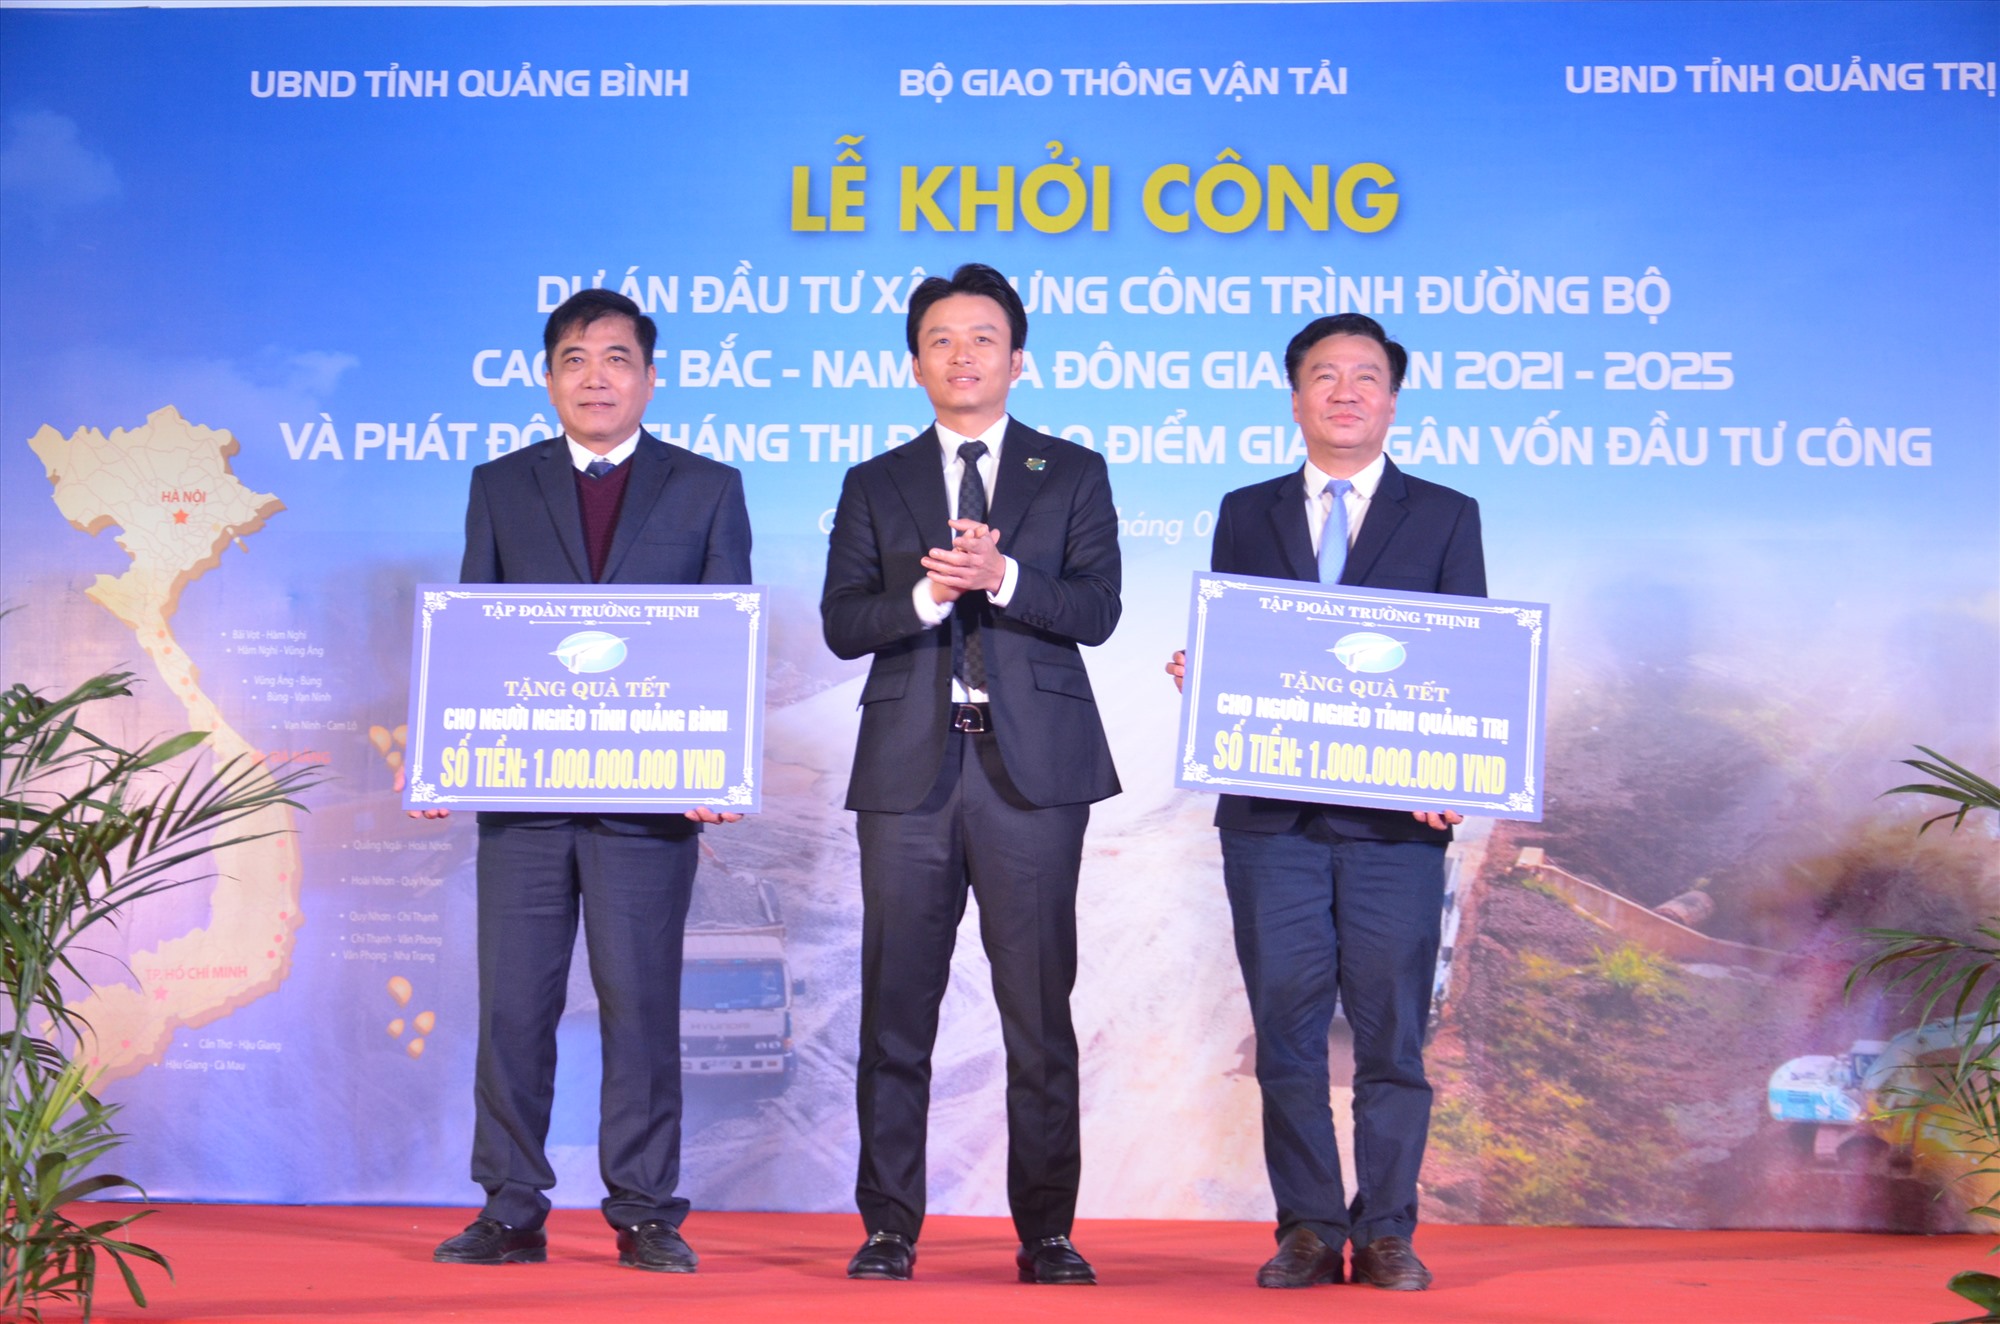 Đại diện Công ty Cổ phần Tập đoàn Trường Thịnh trao tặng 2 tỉ đồng cho hai tỉnh Quảng Bình và Quảng Trị để chăm lo Tết cho người nghèo - Ảnh: Lê Minh